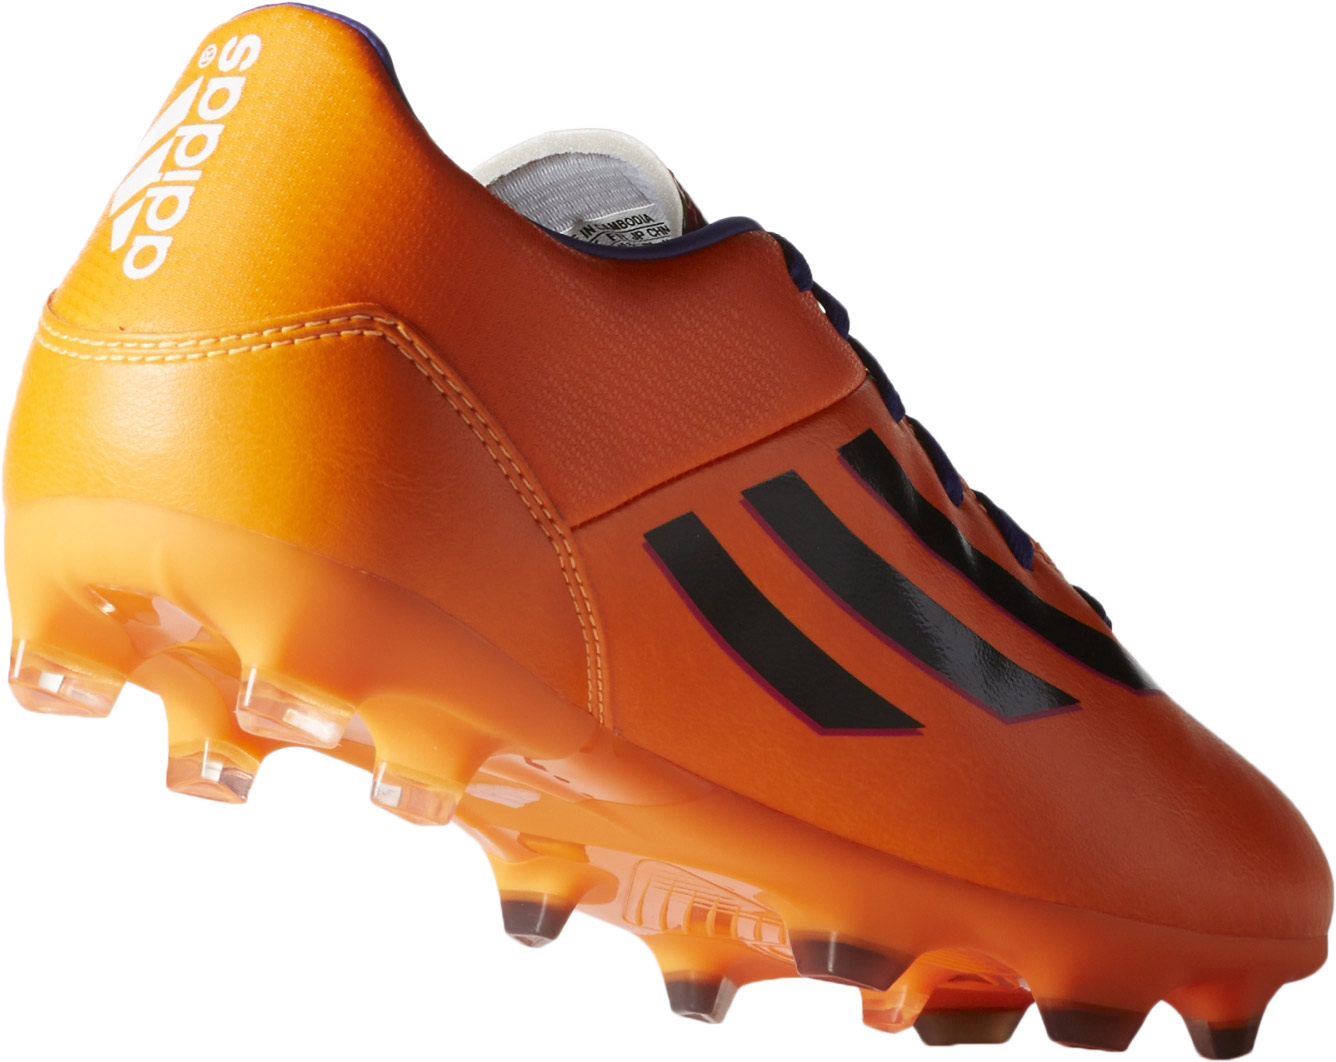 F10 TRX FG - FG Football Boots